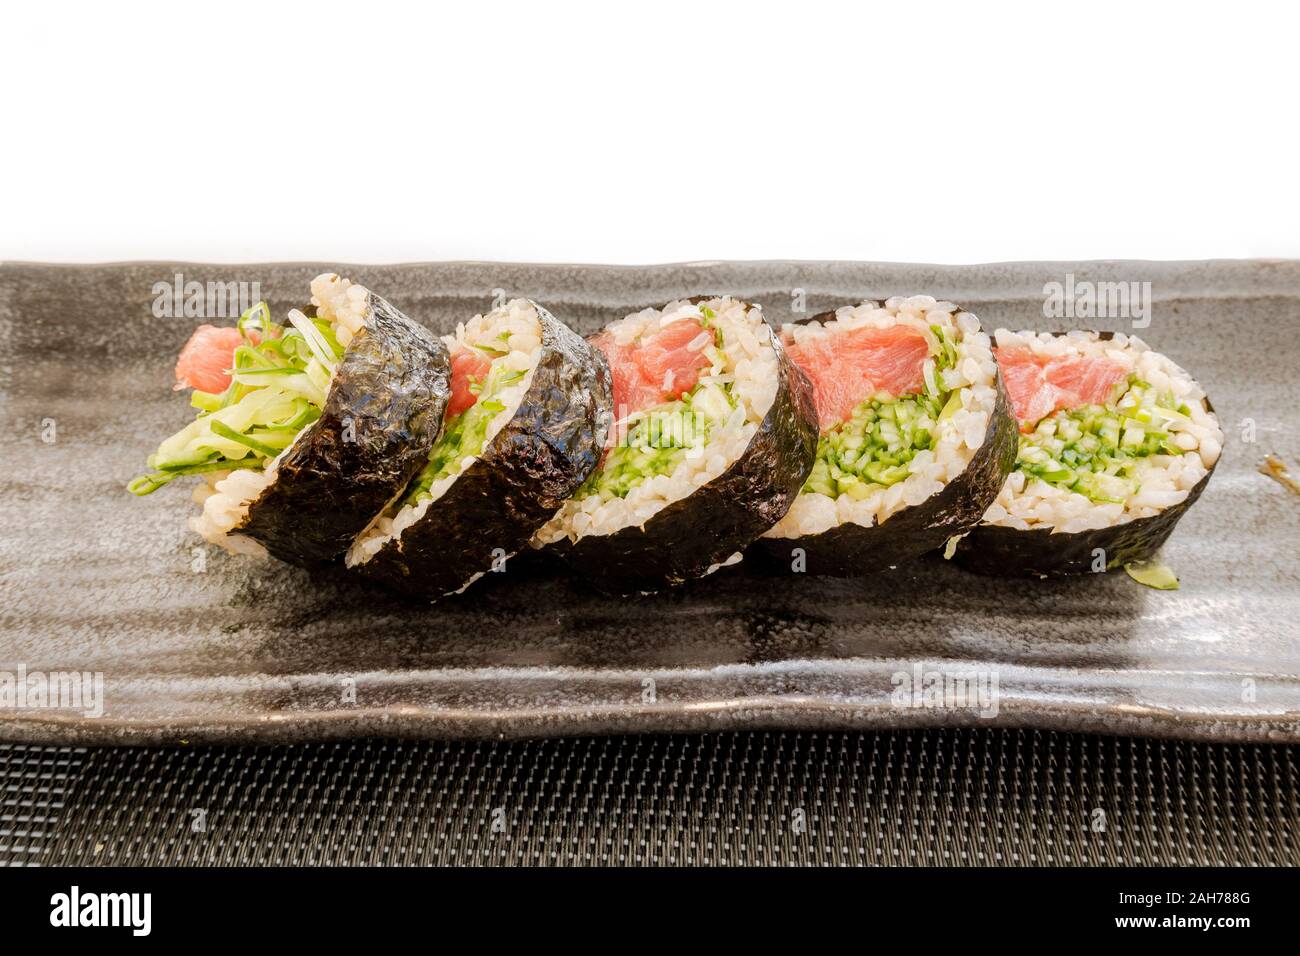 5 rollos de maki sushi envueltos con algas marinas en una placa. Foto de stock